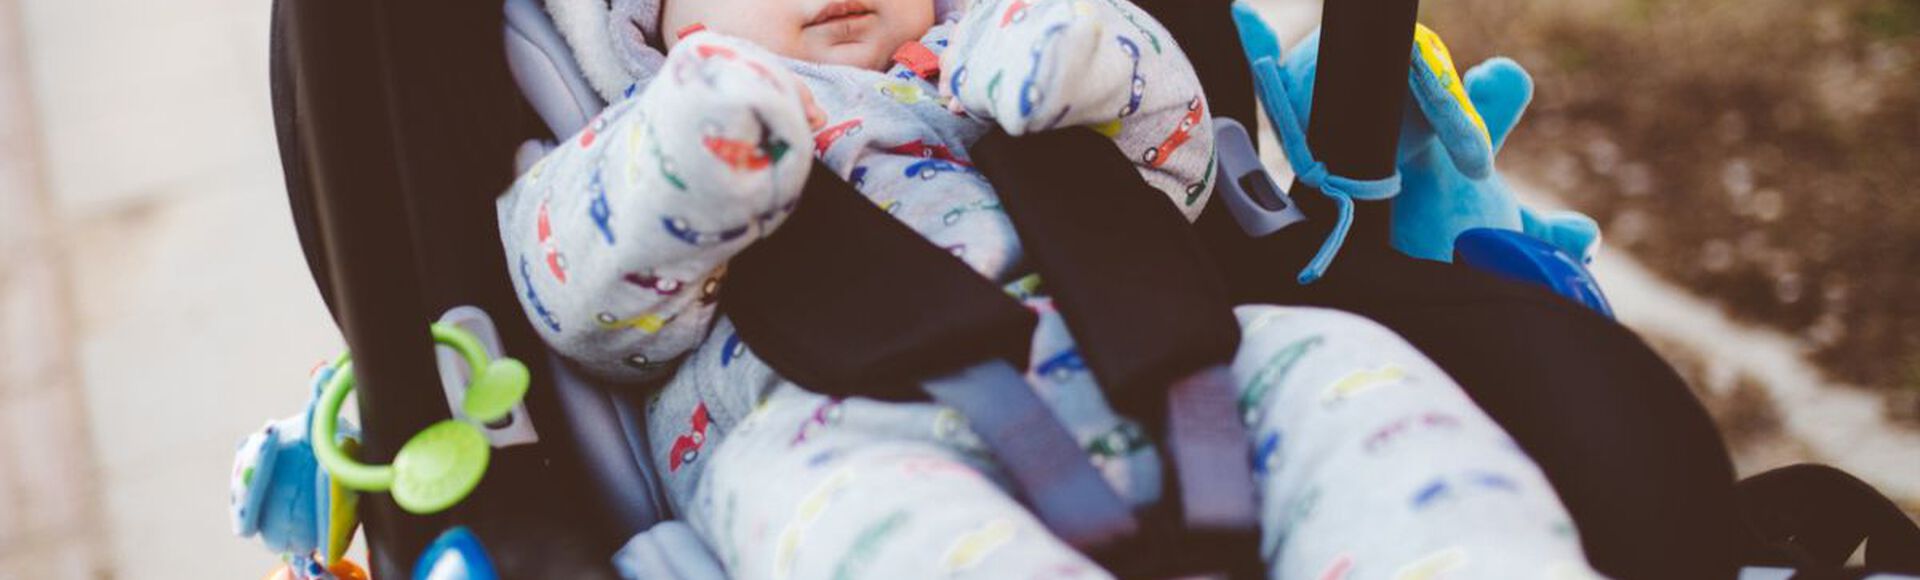 Bebê vestido com roupas de frio em carrinho